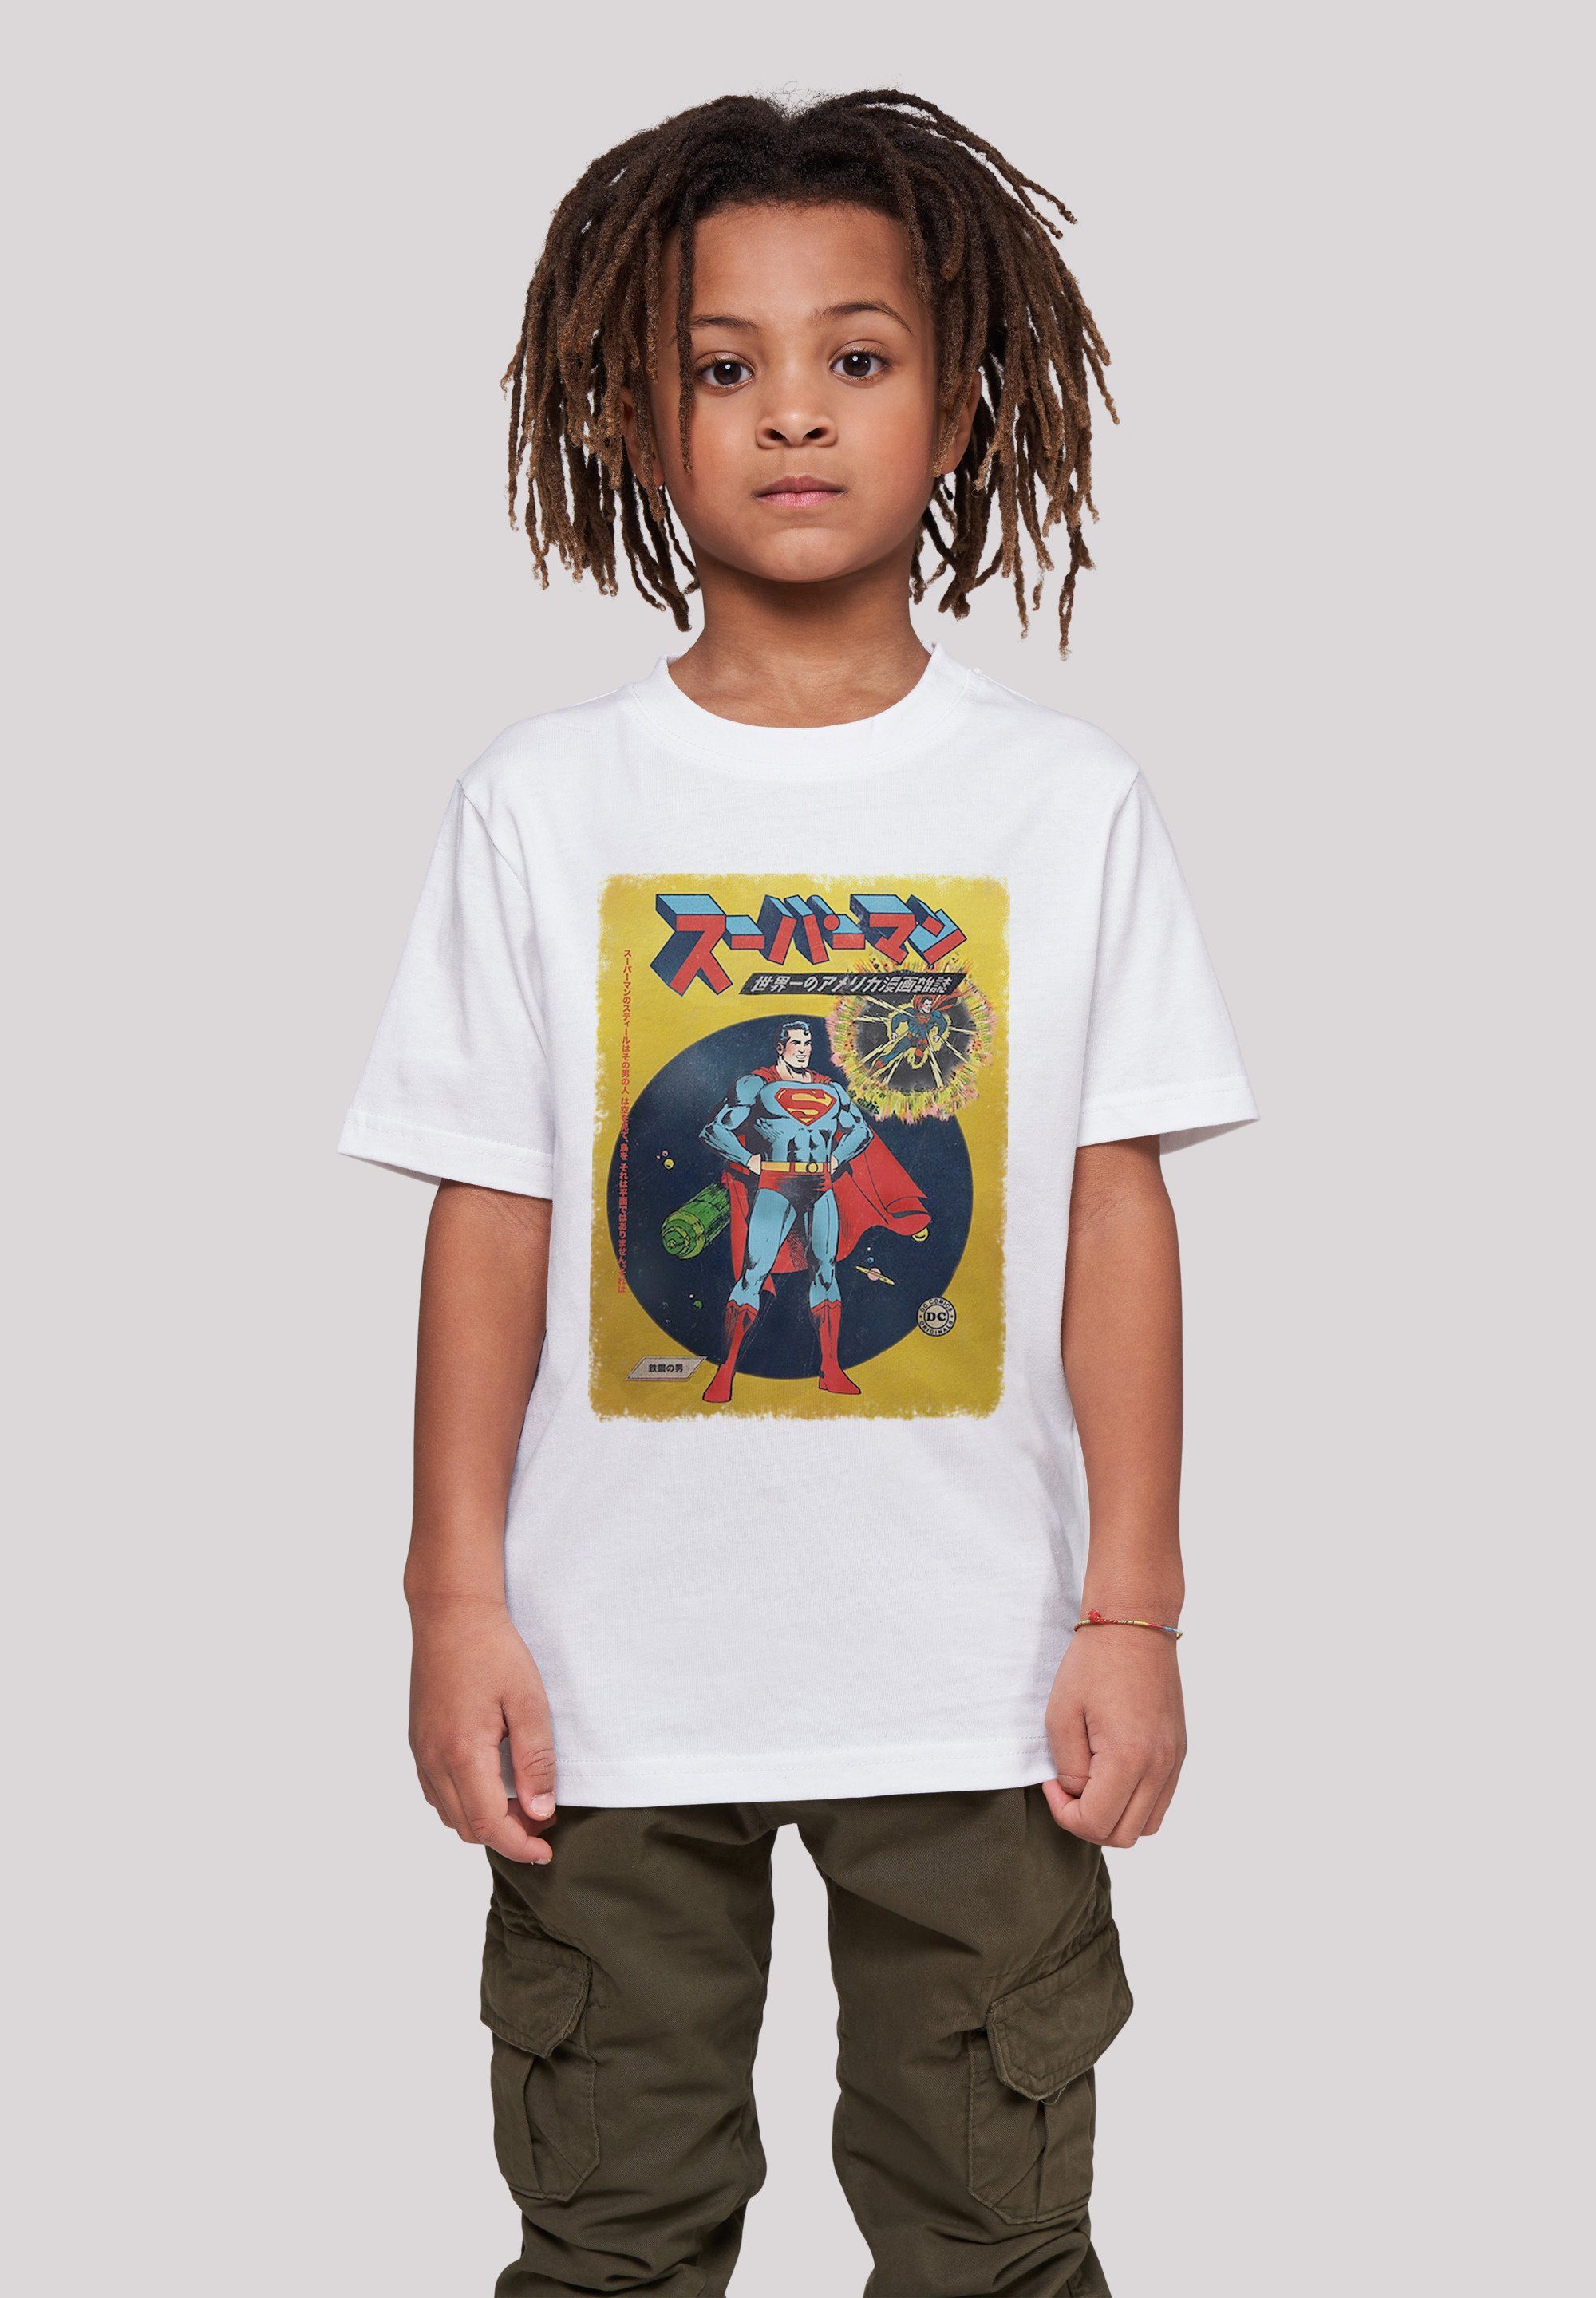 Top-Verkaufskanal F4NT4STIC T-Shirt DC Kinder,Premium Unisex Superman International Cover Merch,Jungen,Mädchen,Bedruckt Comics